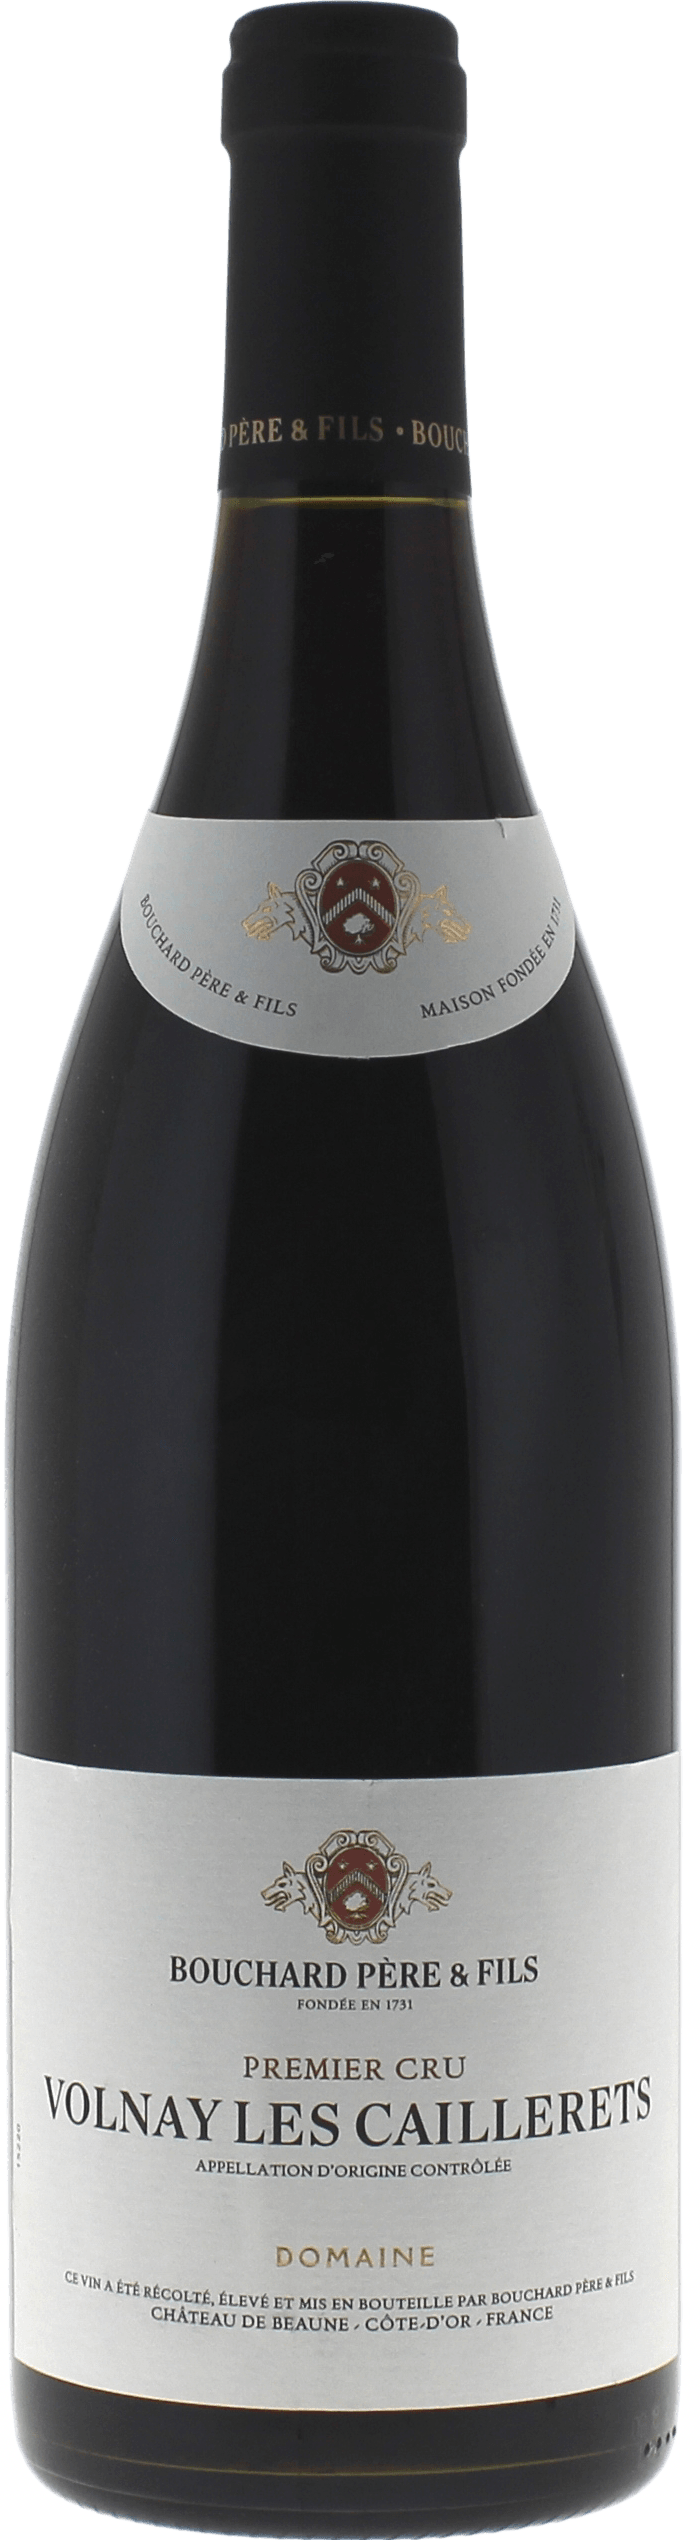 Volnay caillerets 1er cru 2015  BOUCHARD Pre et fils, Bourgogne rouge